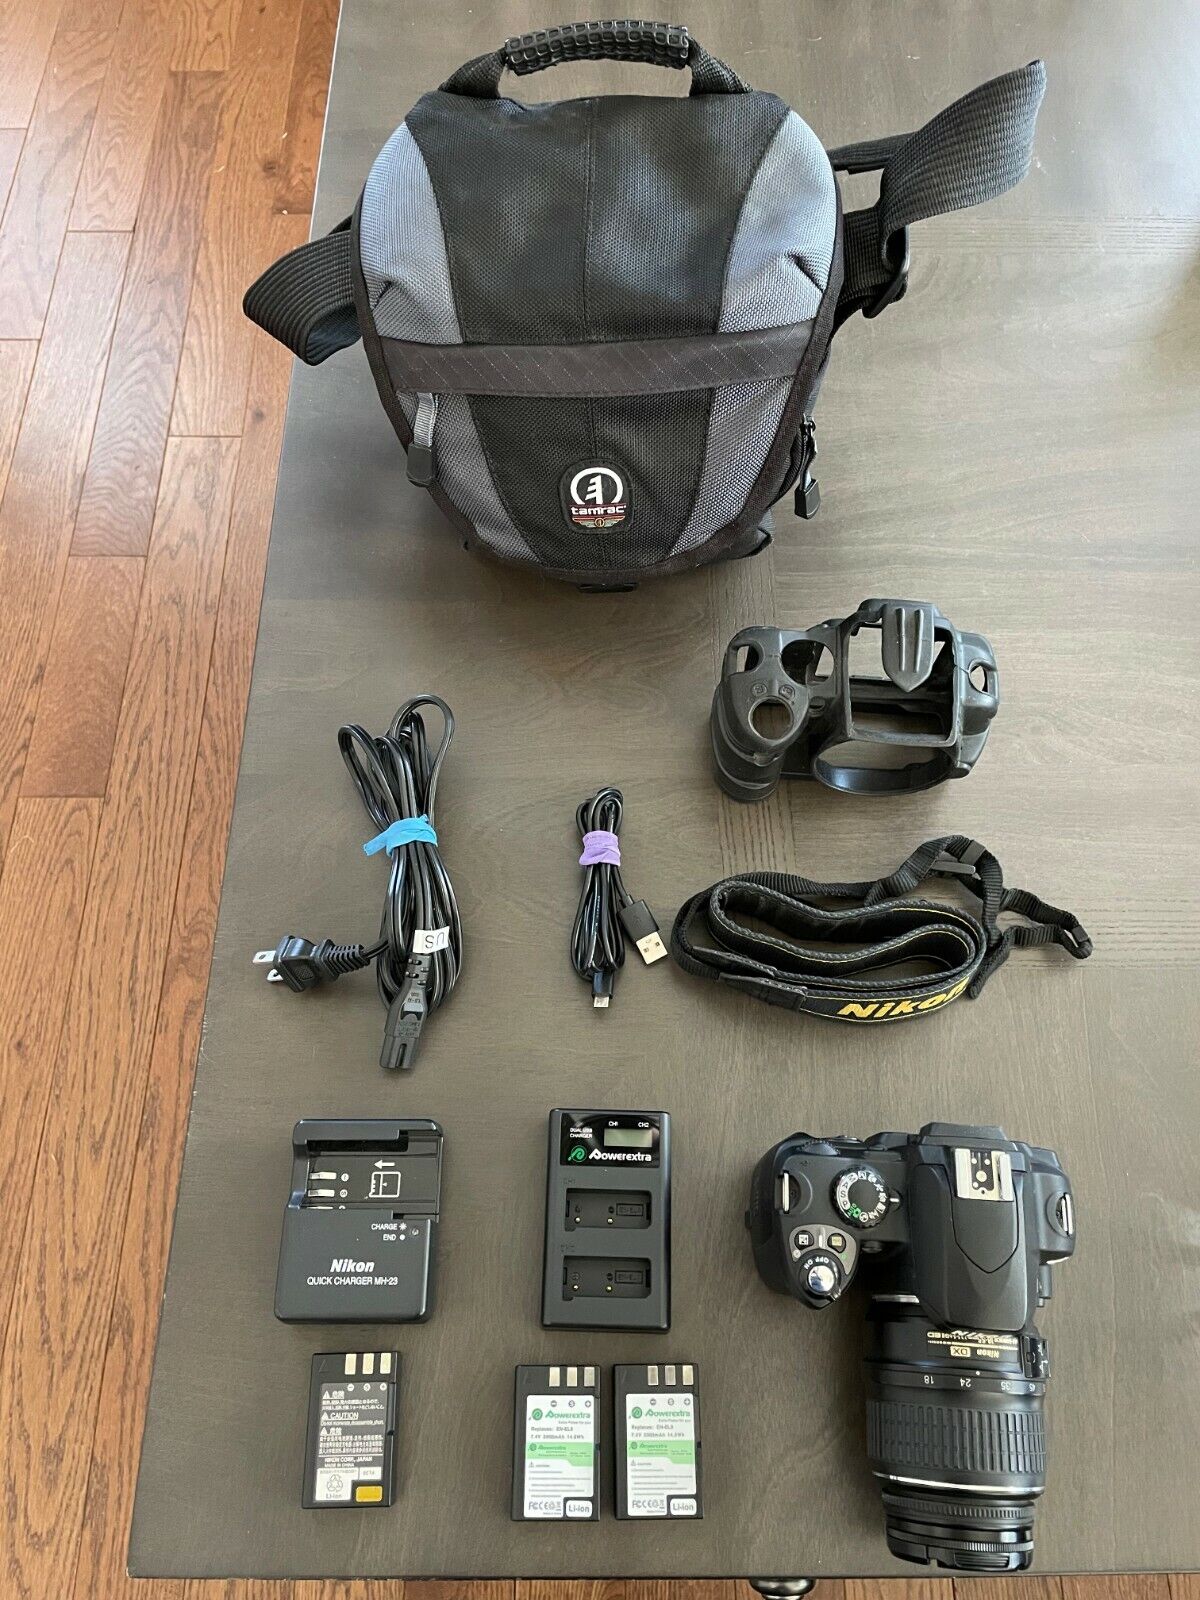 Nikon D40 Digital SLR Camera (Kit w/AF-S DX 18-55mm Lens, Bag, Extra Batteries)